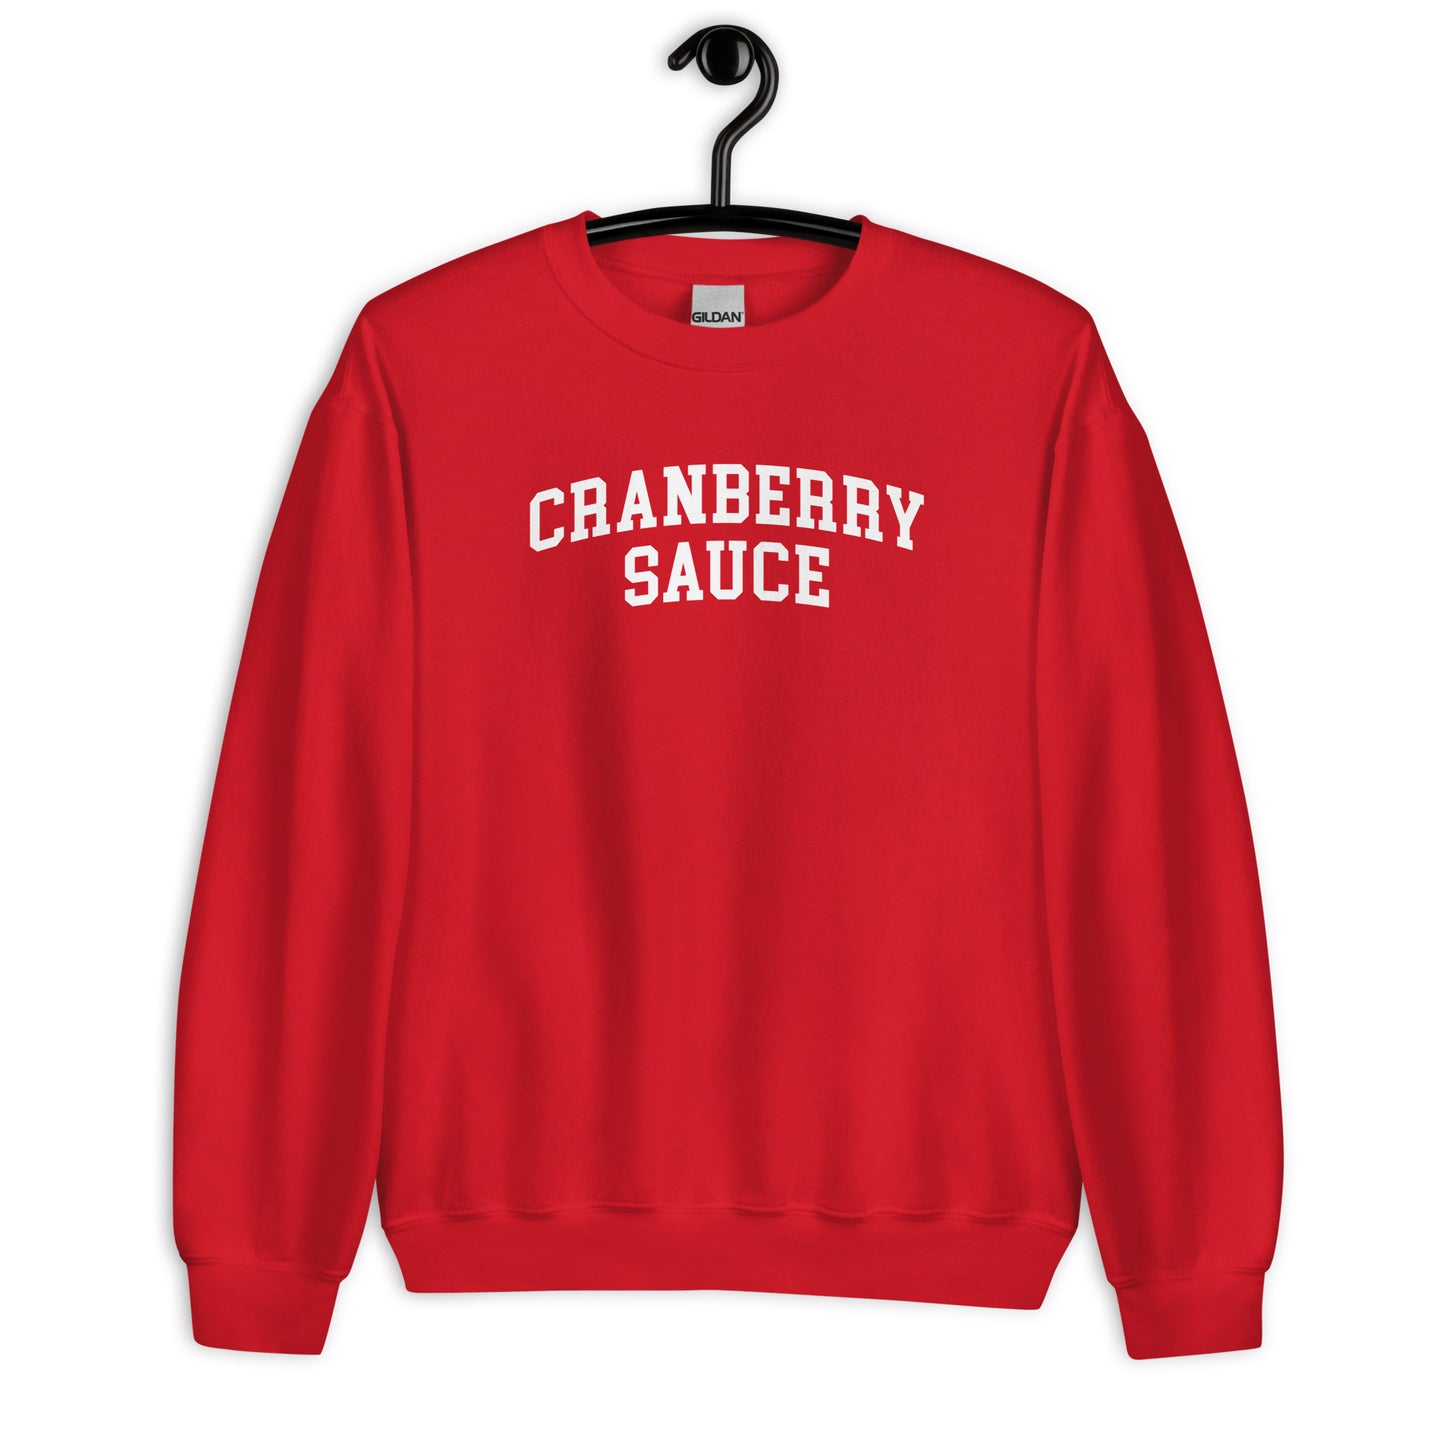 Cranberry Sauce Sweatshirt - Arched Font